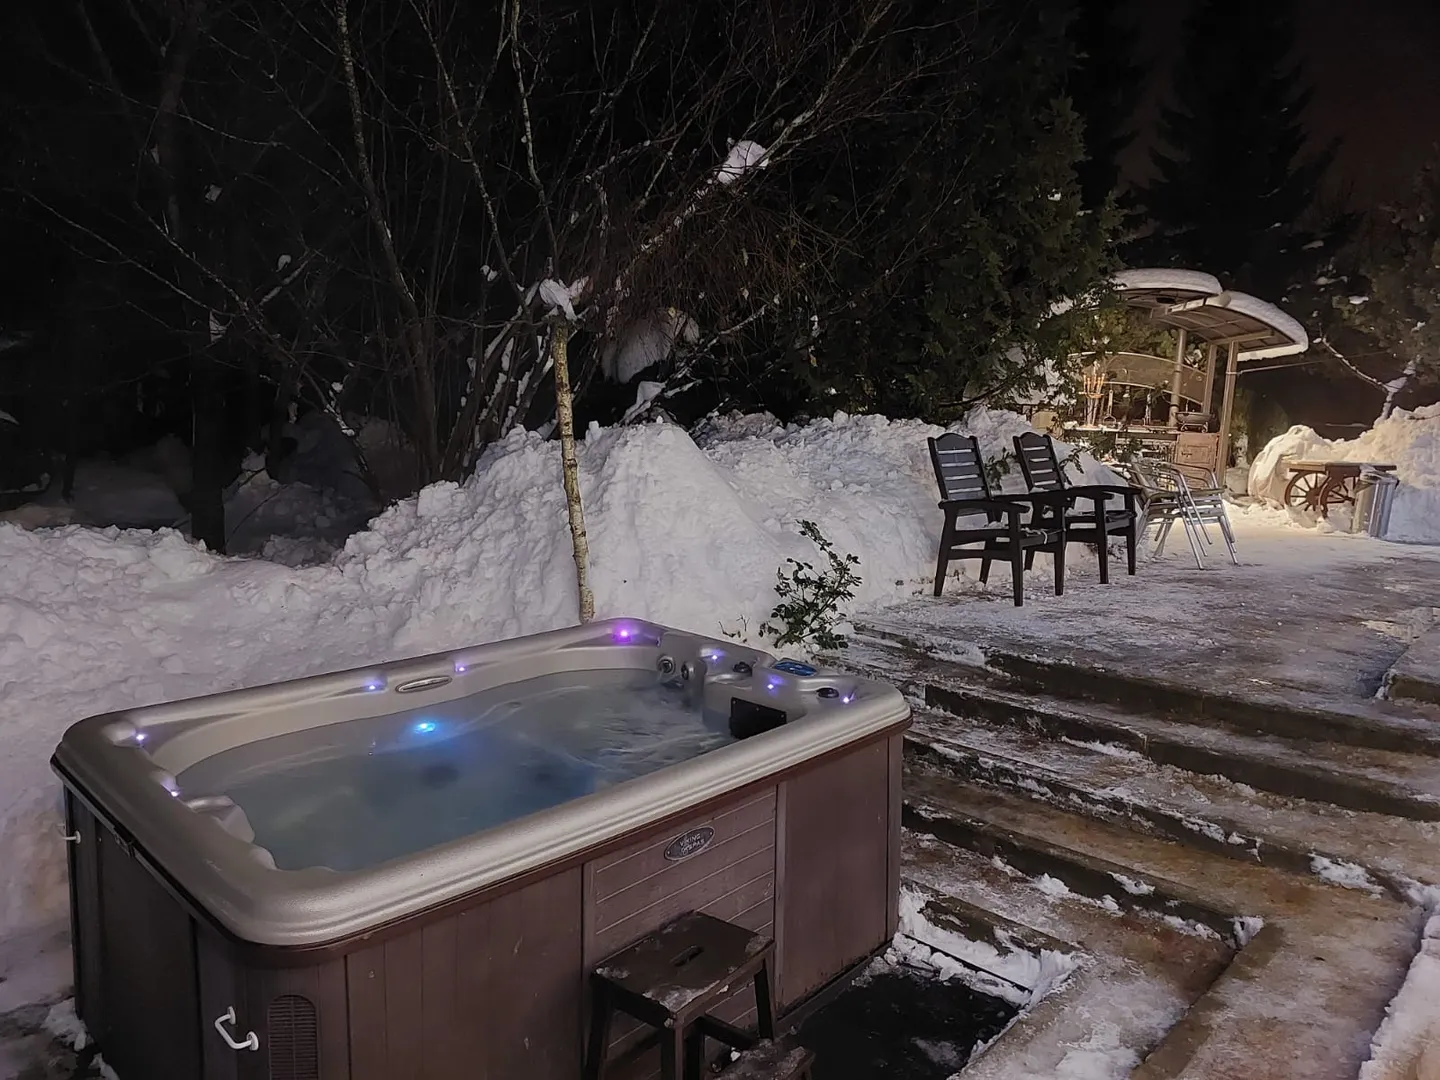 Американский спа-бассейн (джакузи) с подогревом воды, гидромассажем, фильтрацией, озонированием и пузырьками.